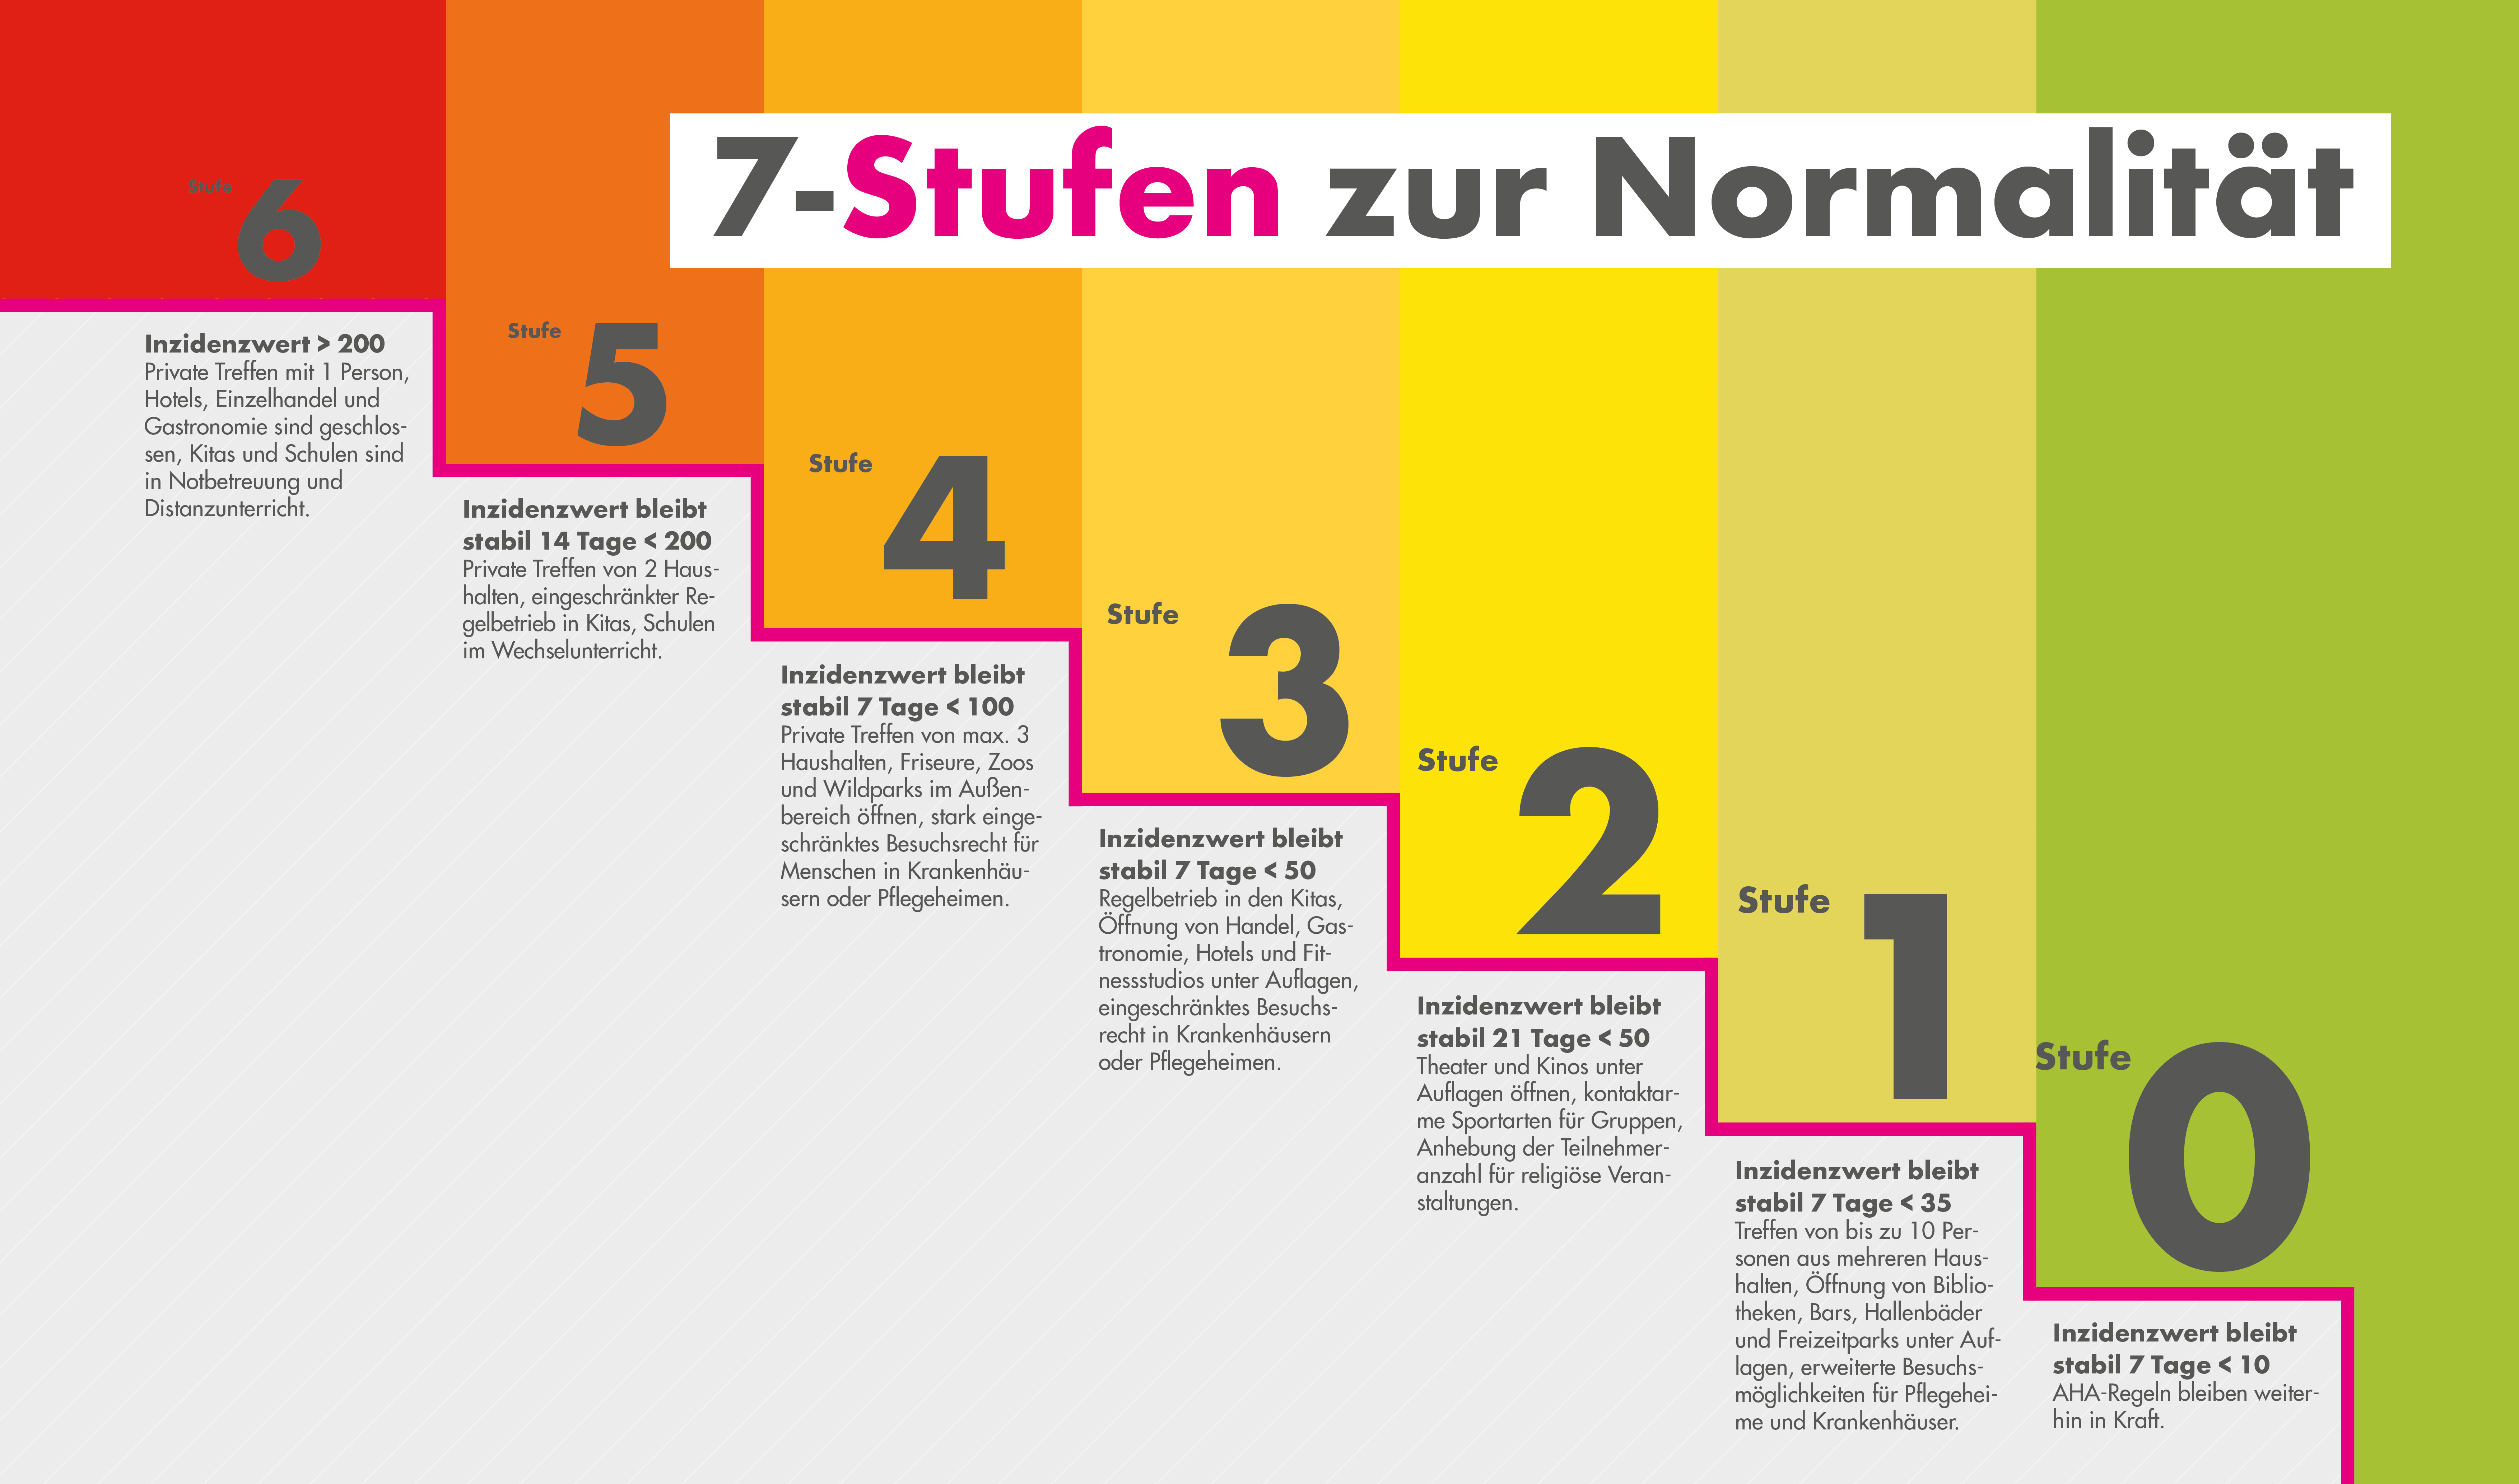 Stufenplan der FDP-Fraktion